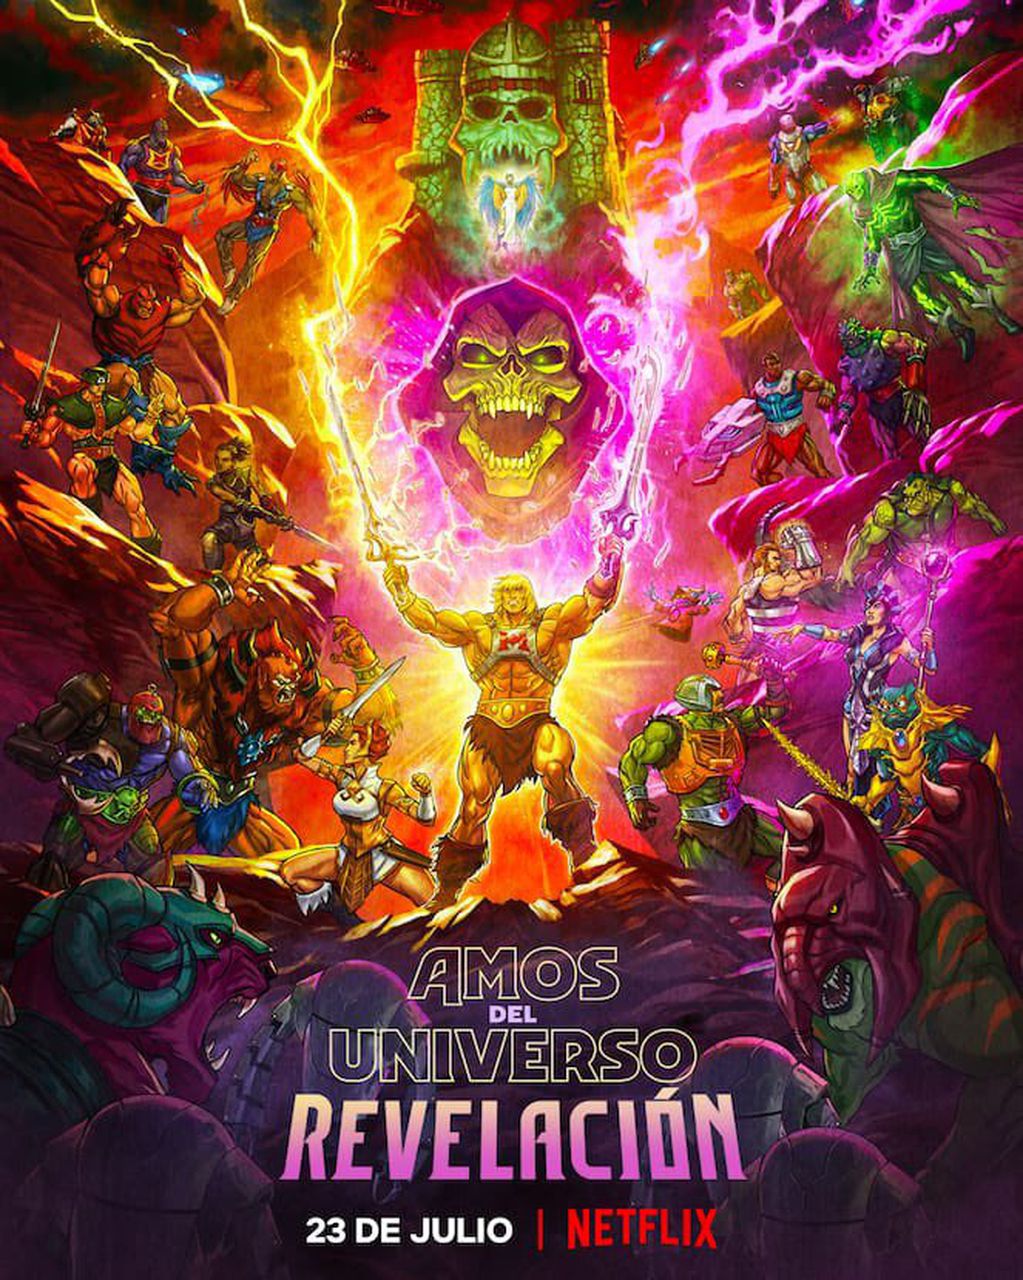 El afiche promocional de "Amos del Universo: Revelación", estrenada el 23 de julio en Netflix.